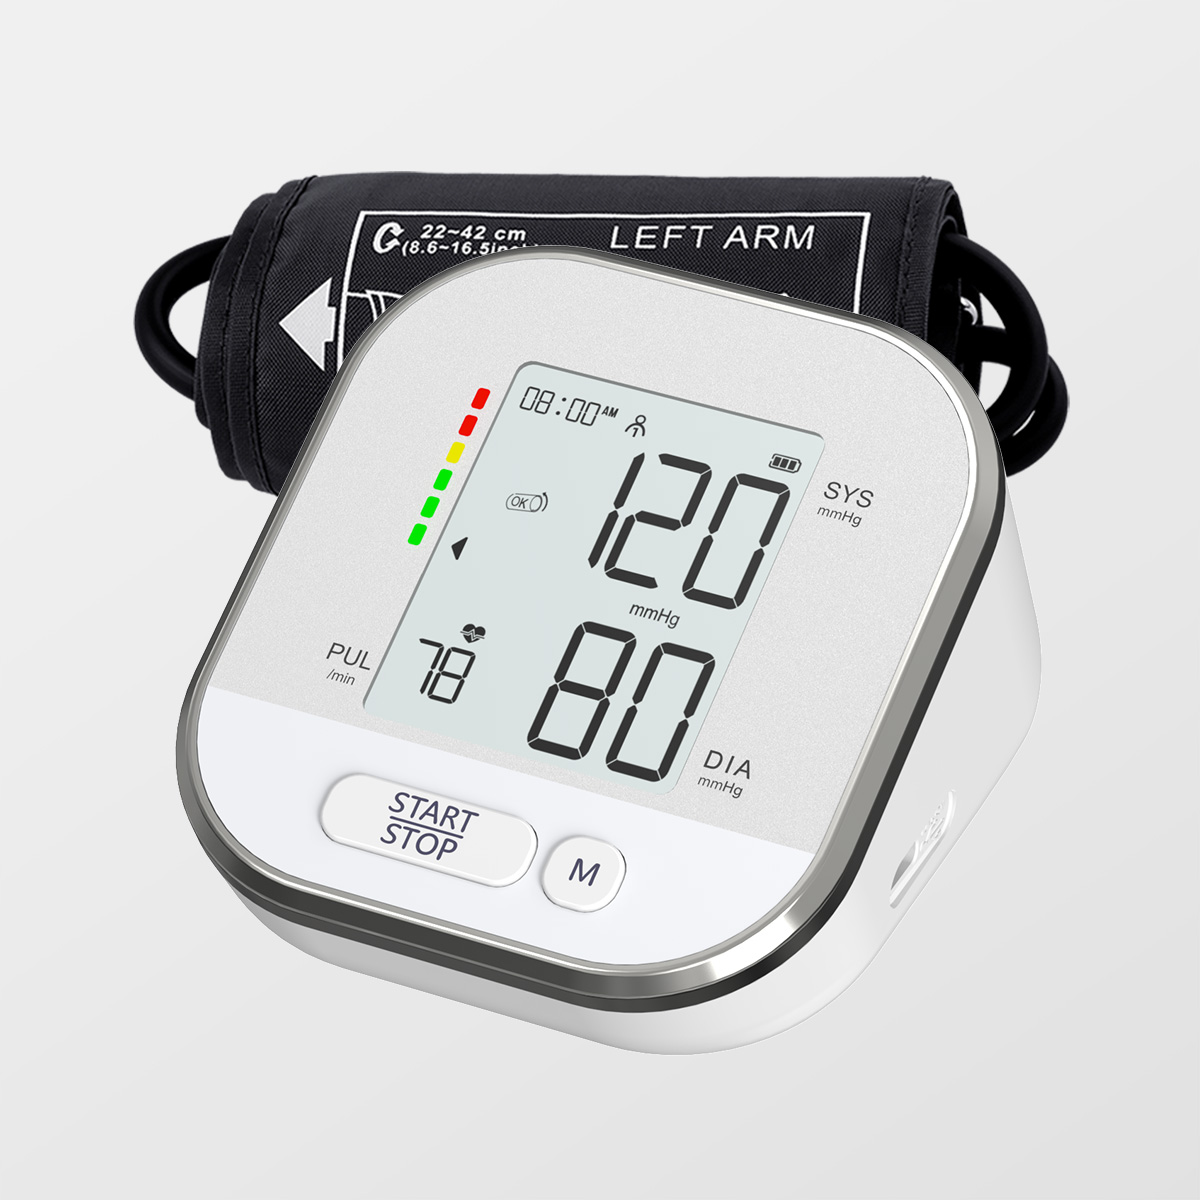 Mjerač krvnog tlaka za nadlakticu Digitalni mjerač krvnog tlaka Bluetooth MDR CE odobren od proizvođača